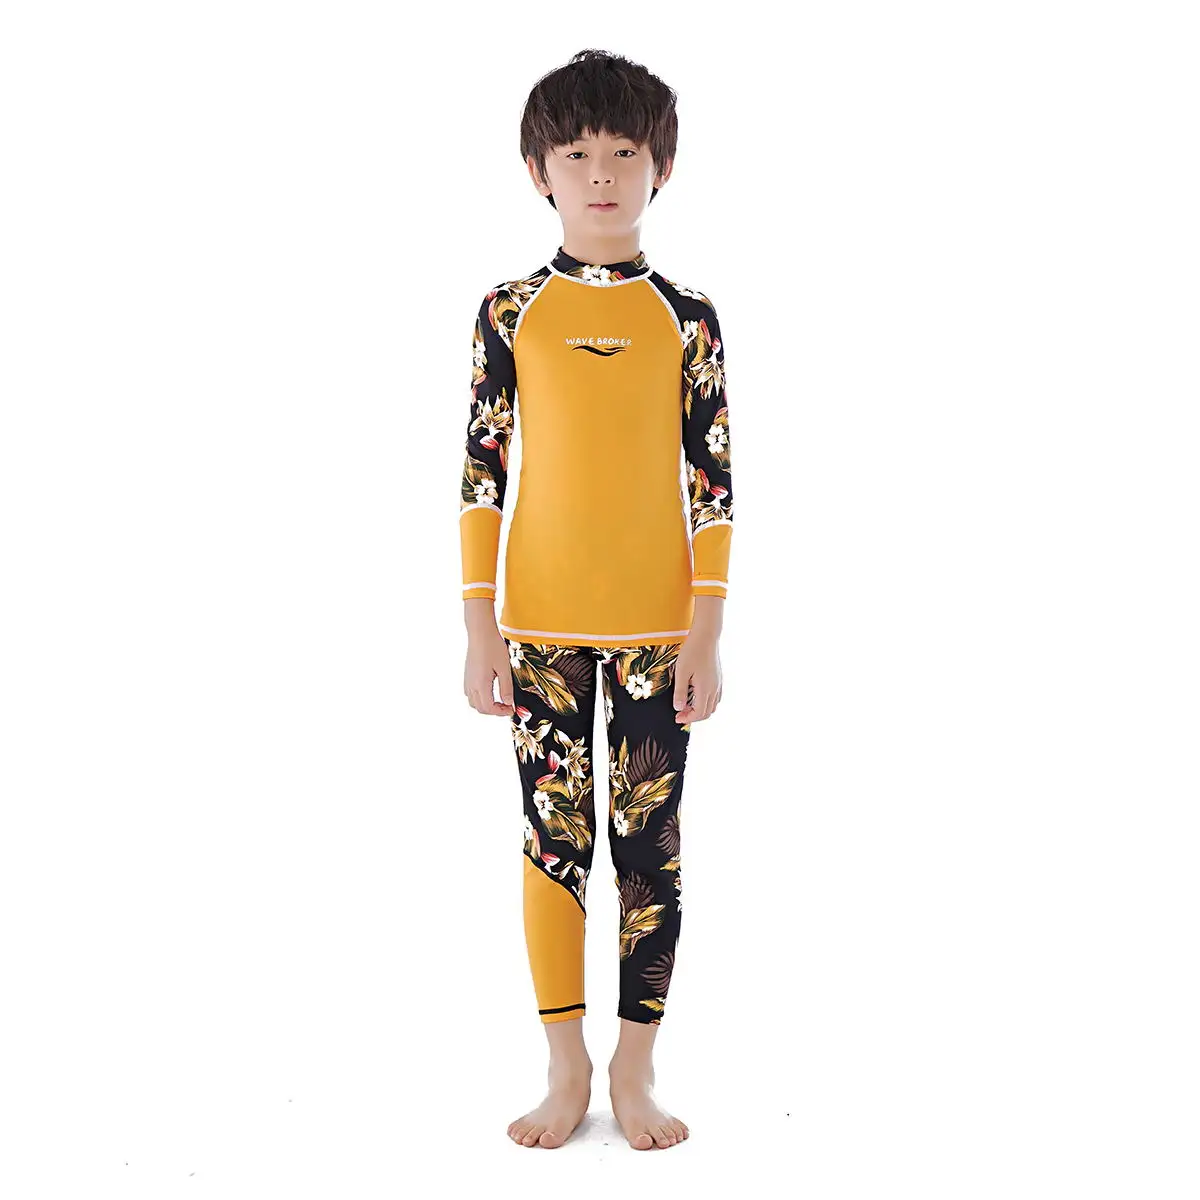 ชุดว่ายน้ำเด็กกันน้ำ,เว็ตสูทเว็ทสูทชุดว่ายน้ำเด็กยางนีโอพรีนชุดชายหาดน่ารักชุดเล่นเซิร์ฟ